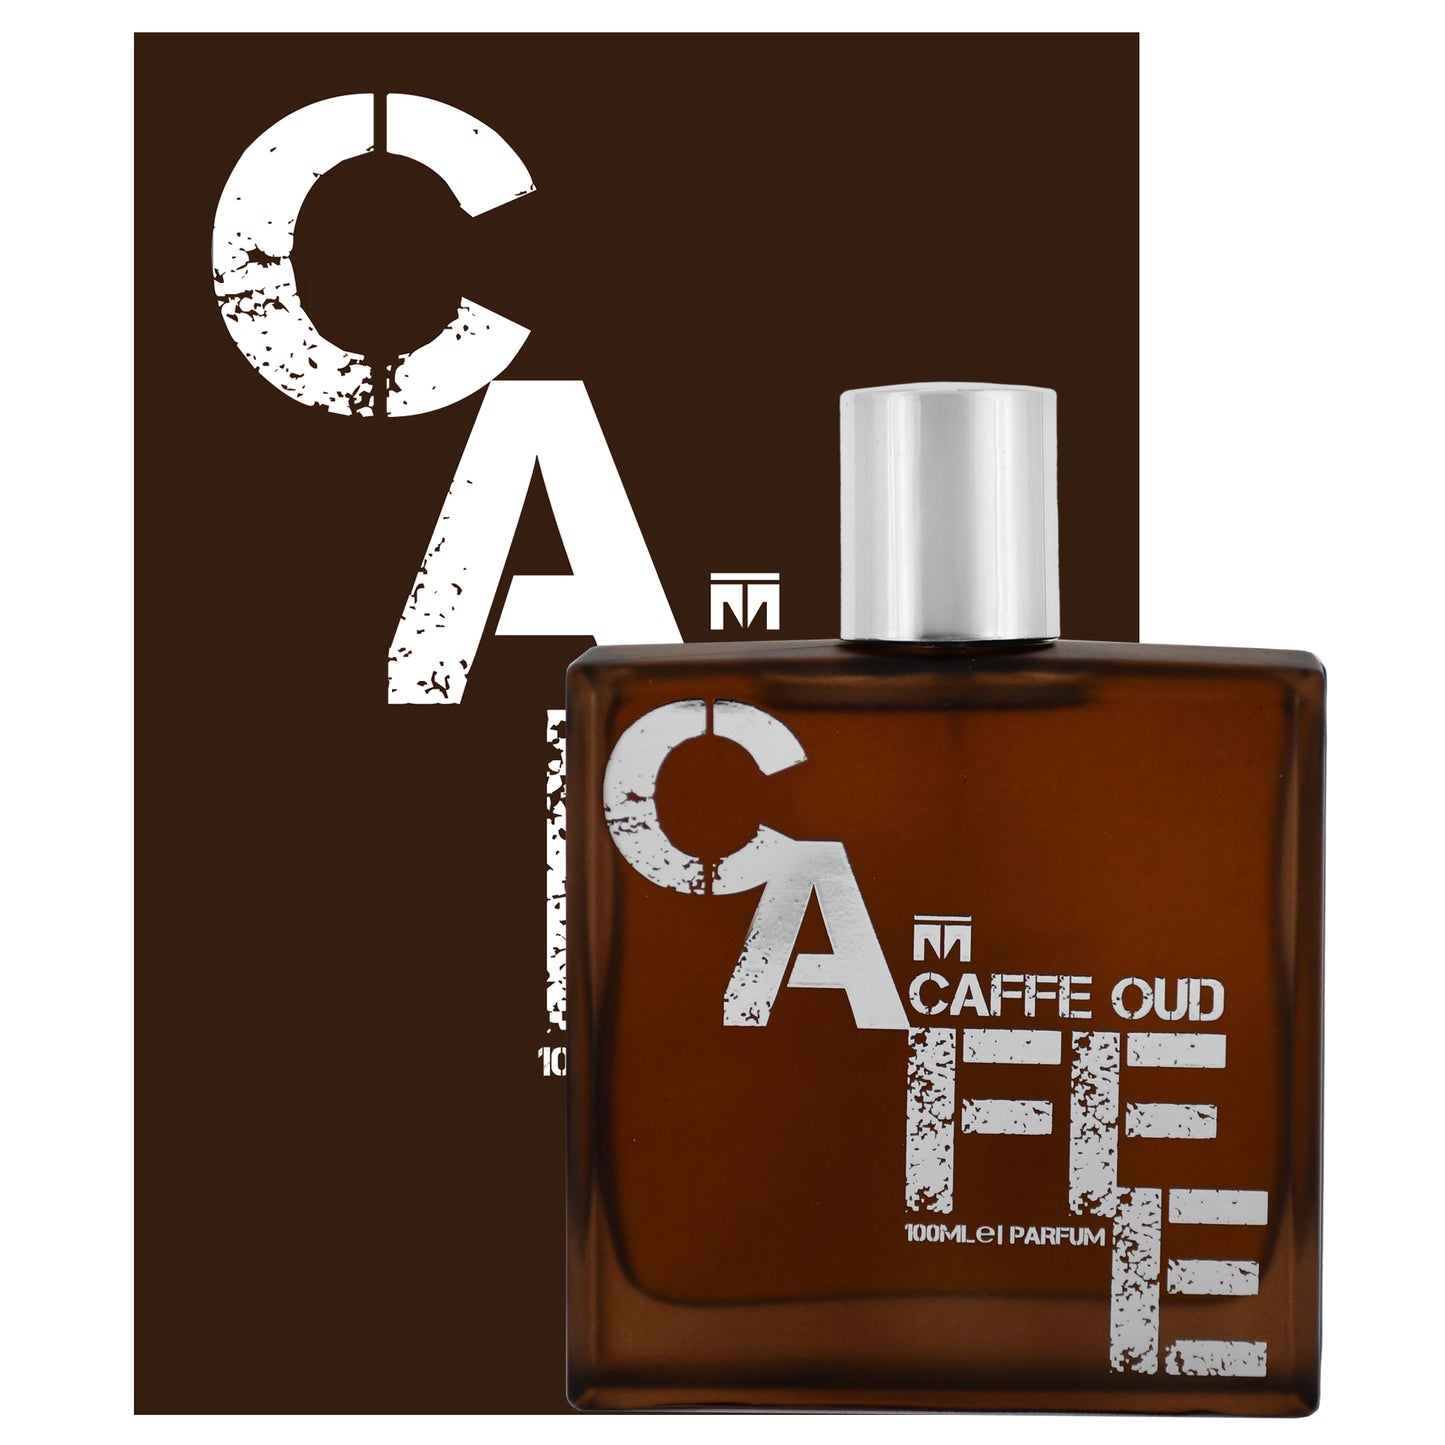 Cafe Oud - 100ml Parfum